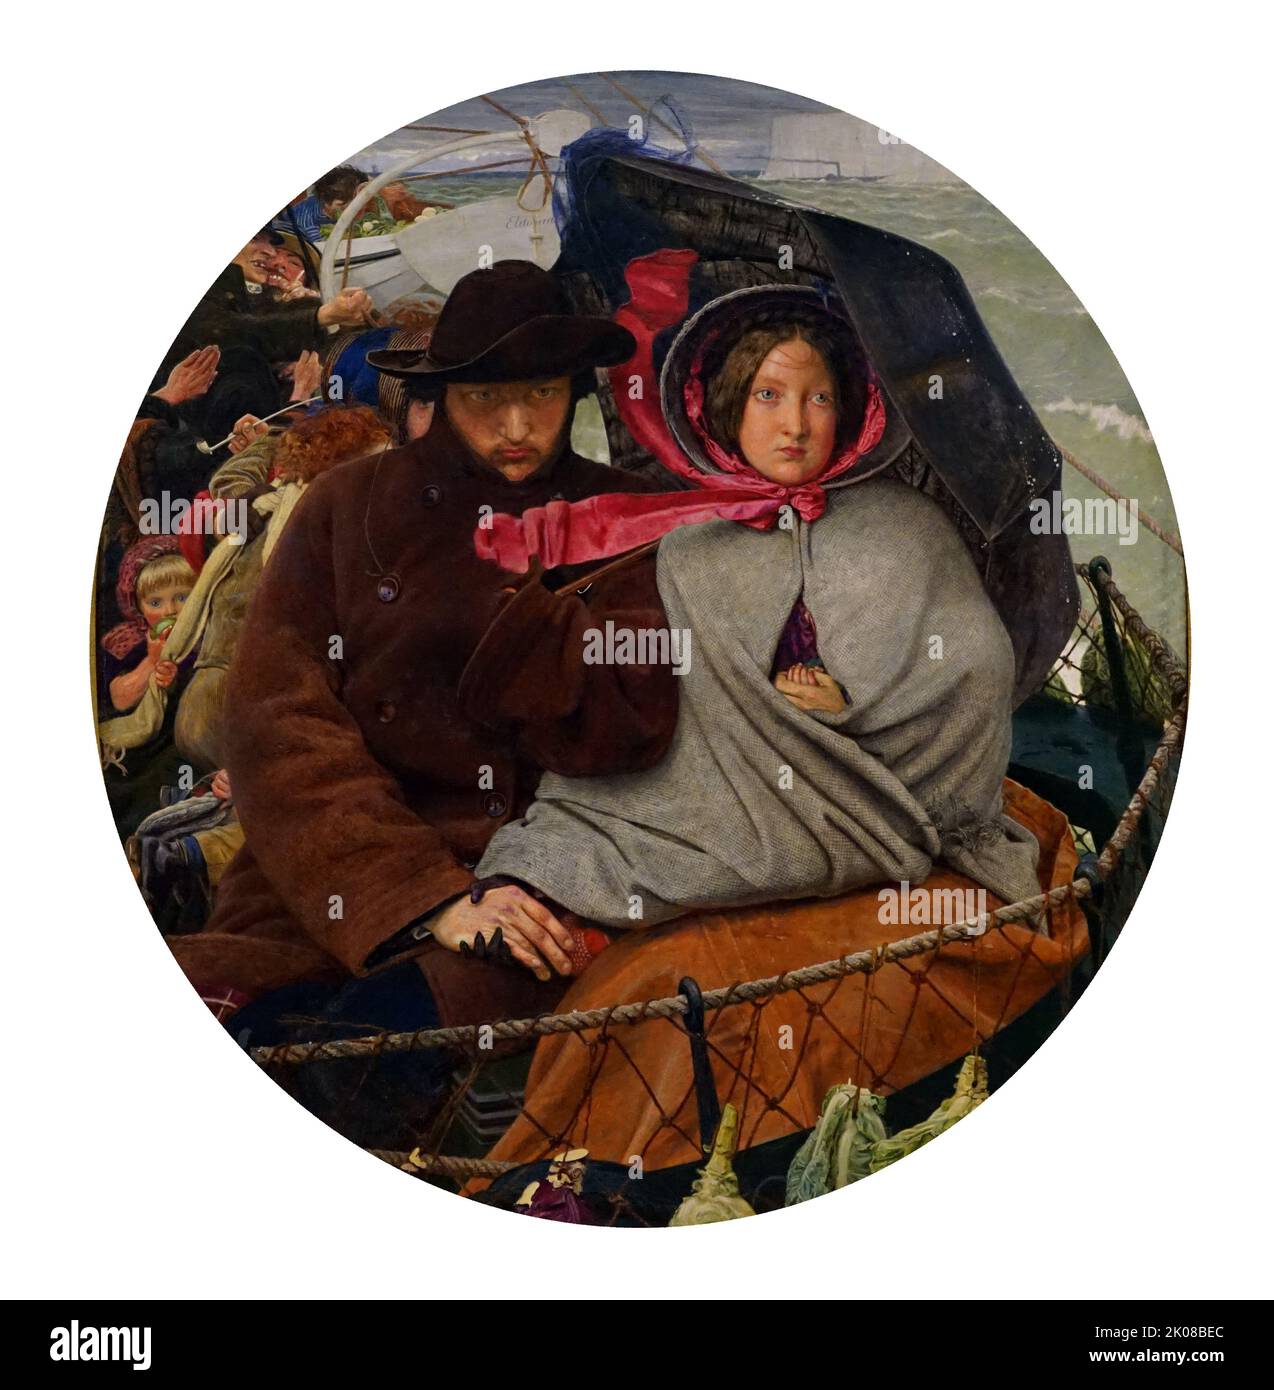 The Last of England, 1852-55, von Ford Madox Brown (16. April 1821 - 6. Oktober 1893) war ein britischer Maler moralischer und historischer Themen, der sich durch seine markant grafische und oft hogarthische Version des Präraffaeliten-Stils auszeichnen konnte Stockfoto